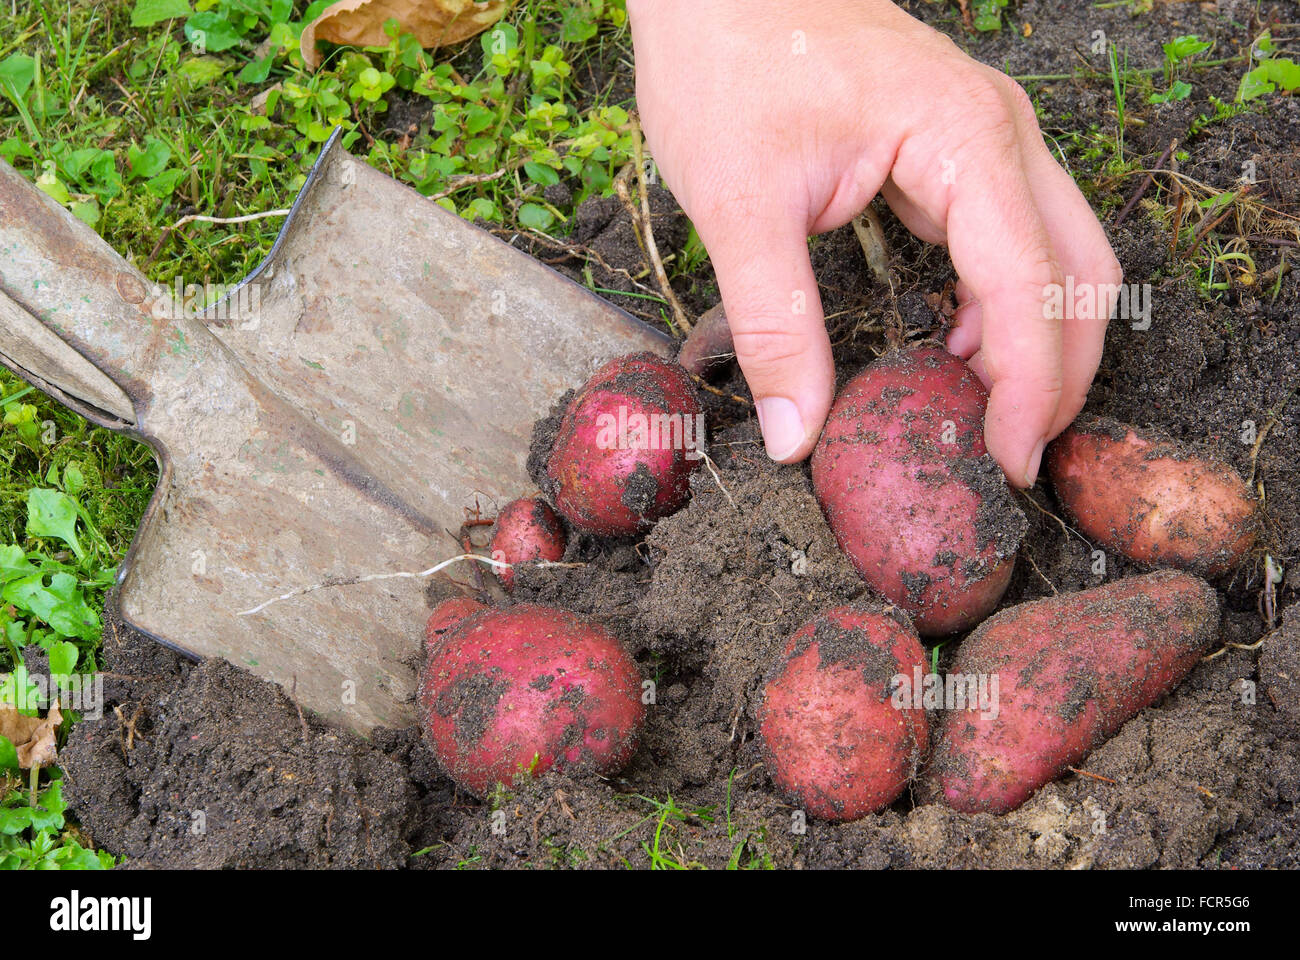 Kartoffeln Ernten - Kartoffel ernten 03 Stockfoto